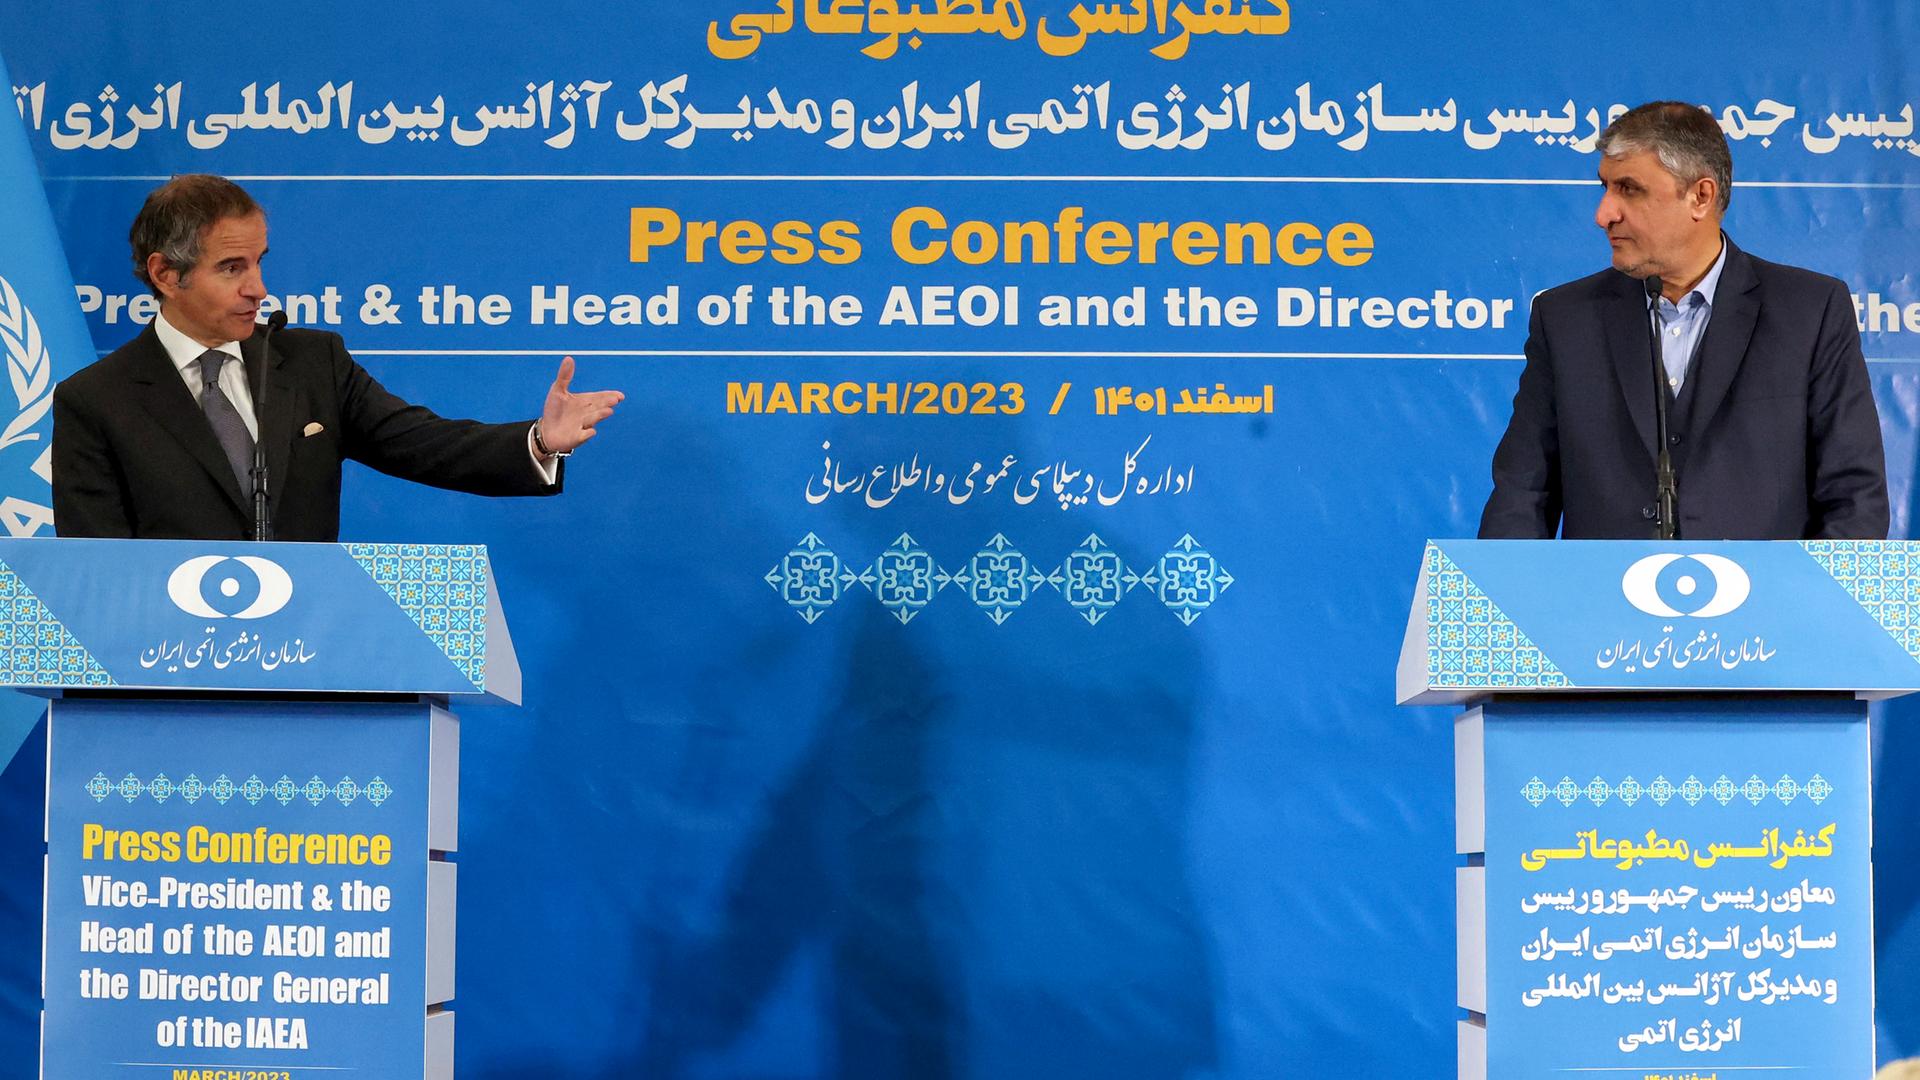 Beide stehen jeweils an einem Rednerpult vor einerblauen Wand mit der Aufschrift "Press Conference"